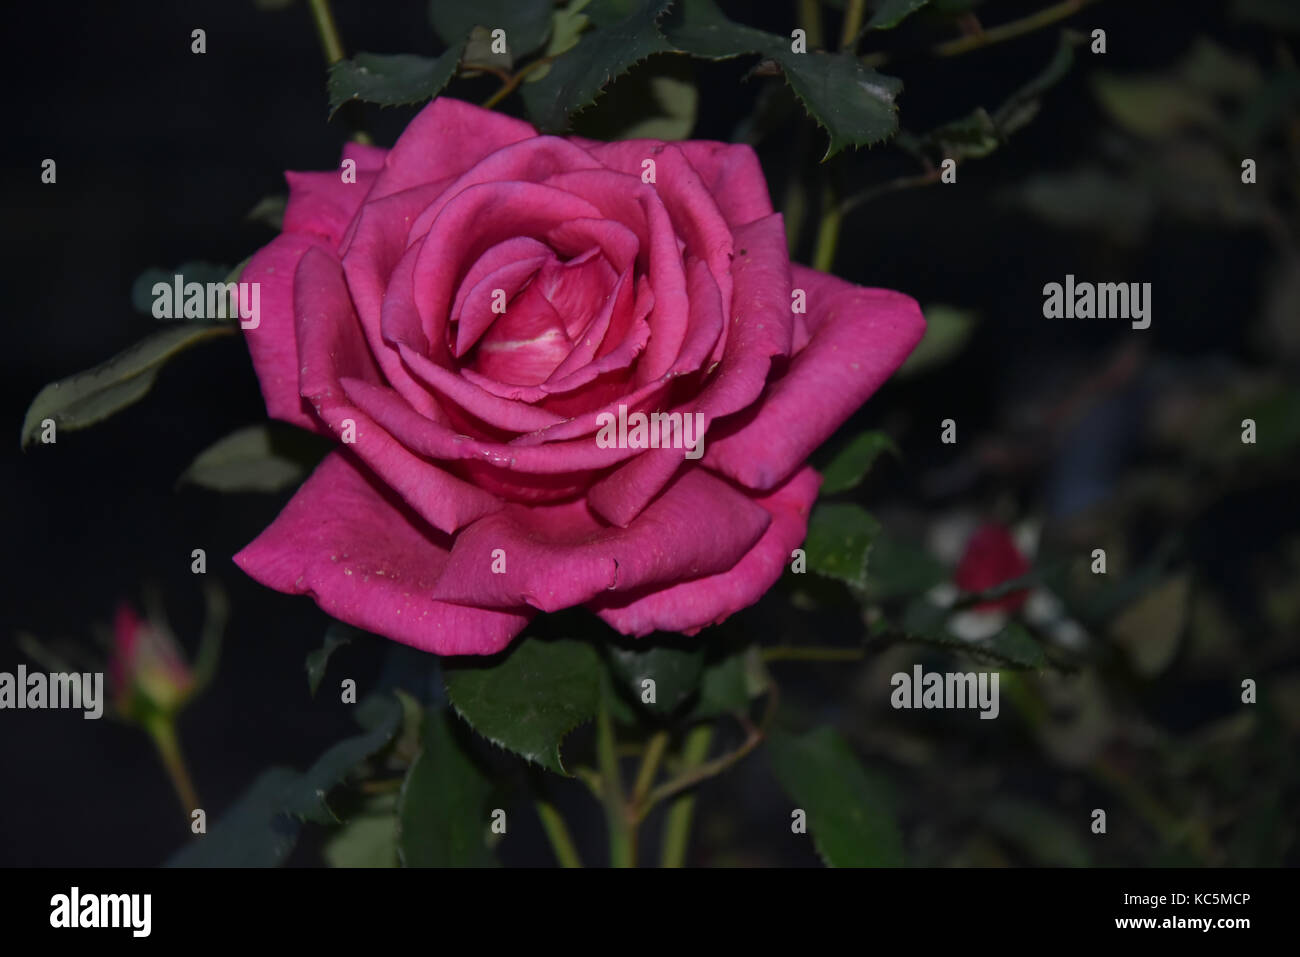 Rosa rosa, sfondo nero Foto Stock